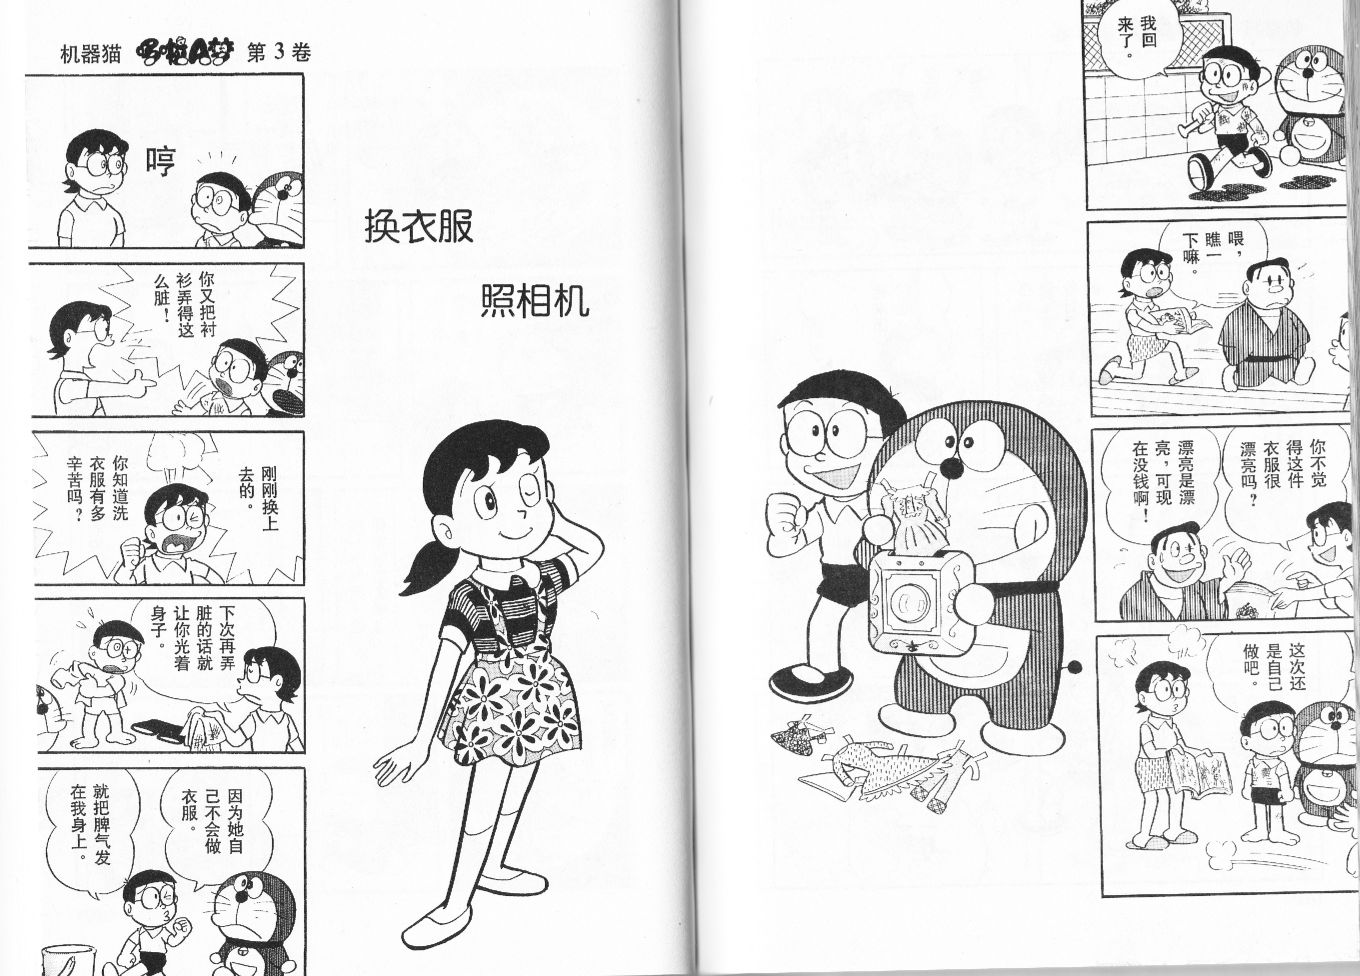 中文版「ドラえもん」学習開始 (15年8月7日) : 